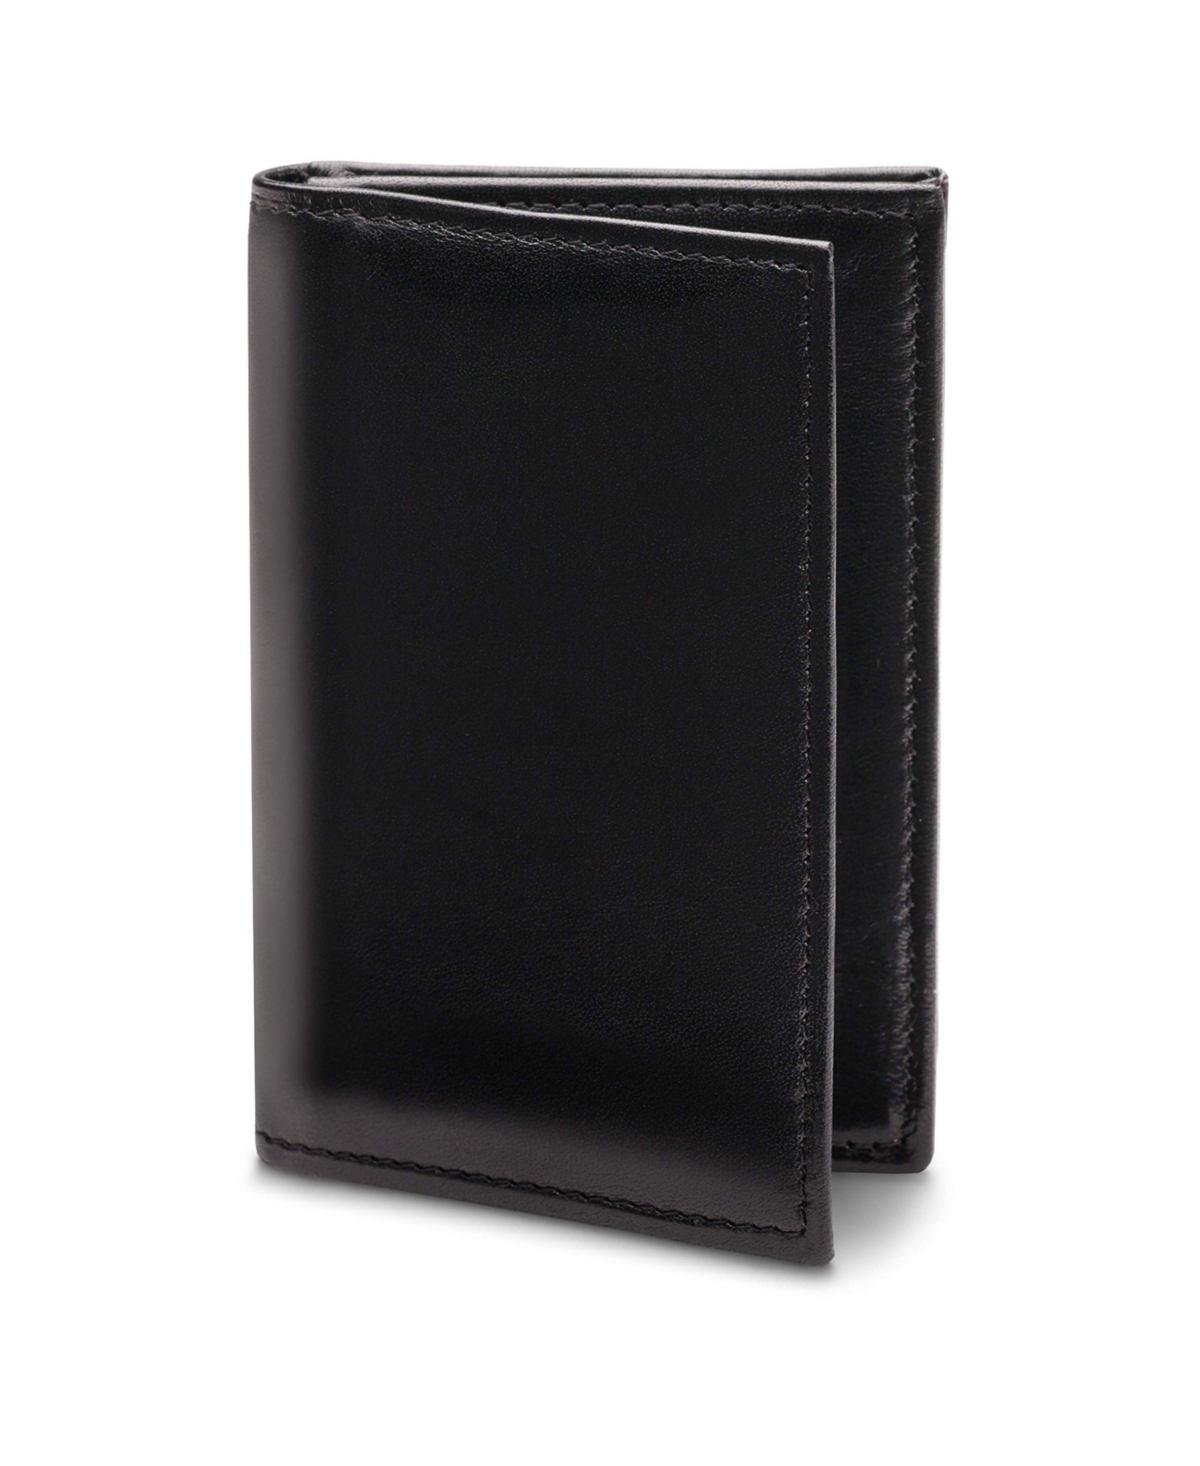 Men's Wallet, Old Leather Full Gusset 2-Pocket Card Case Wallet with I.d. Window - Black